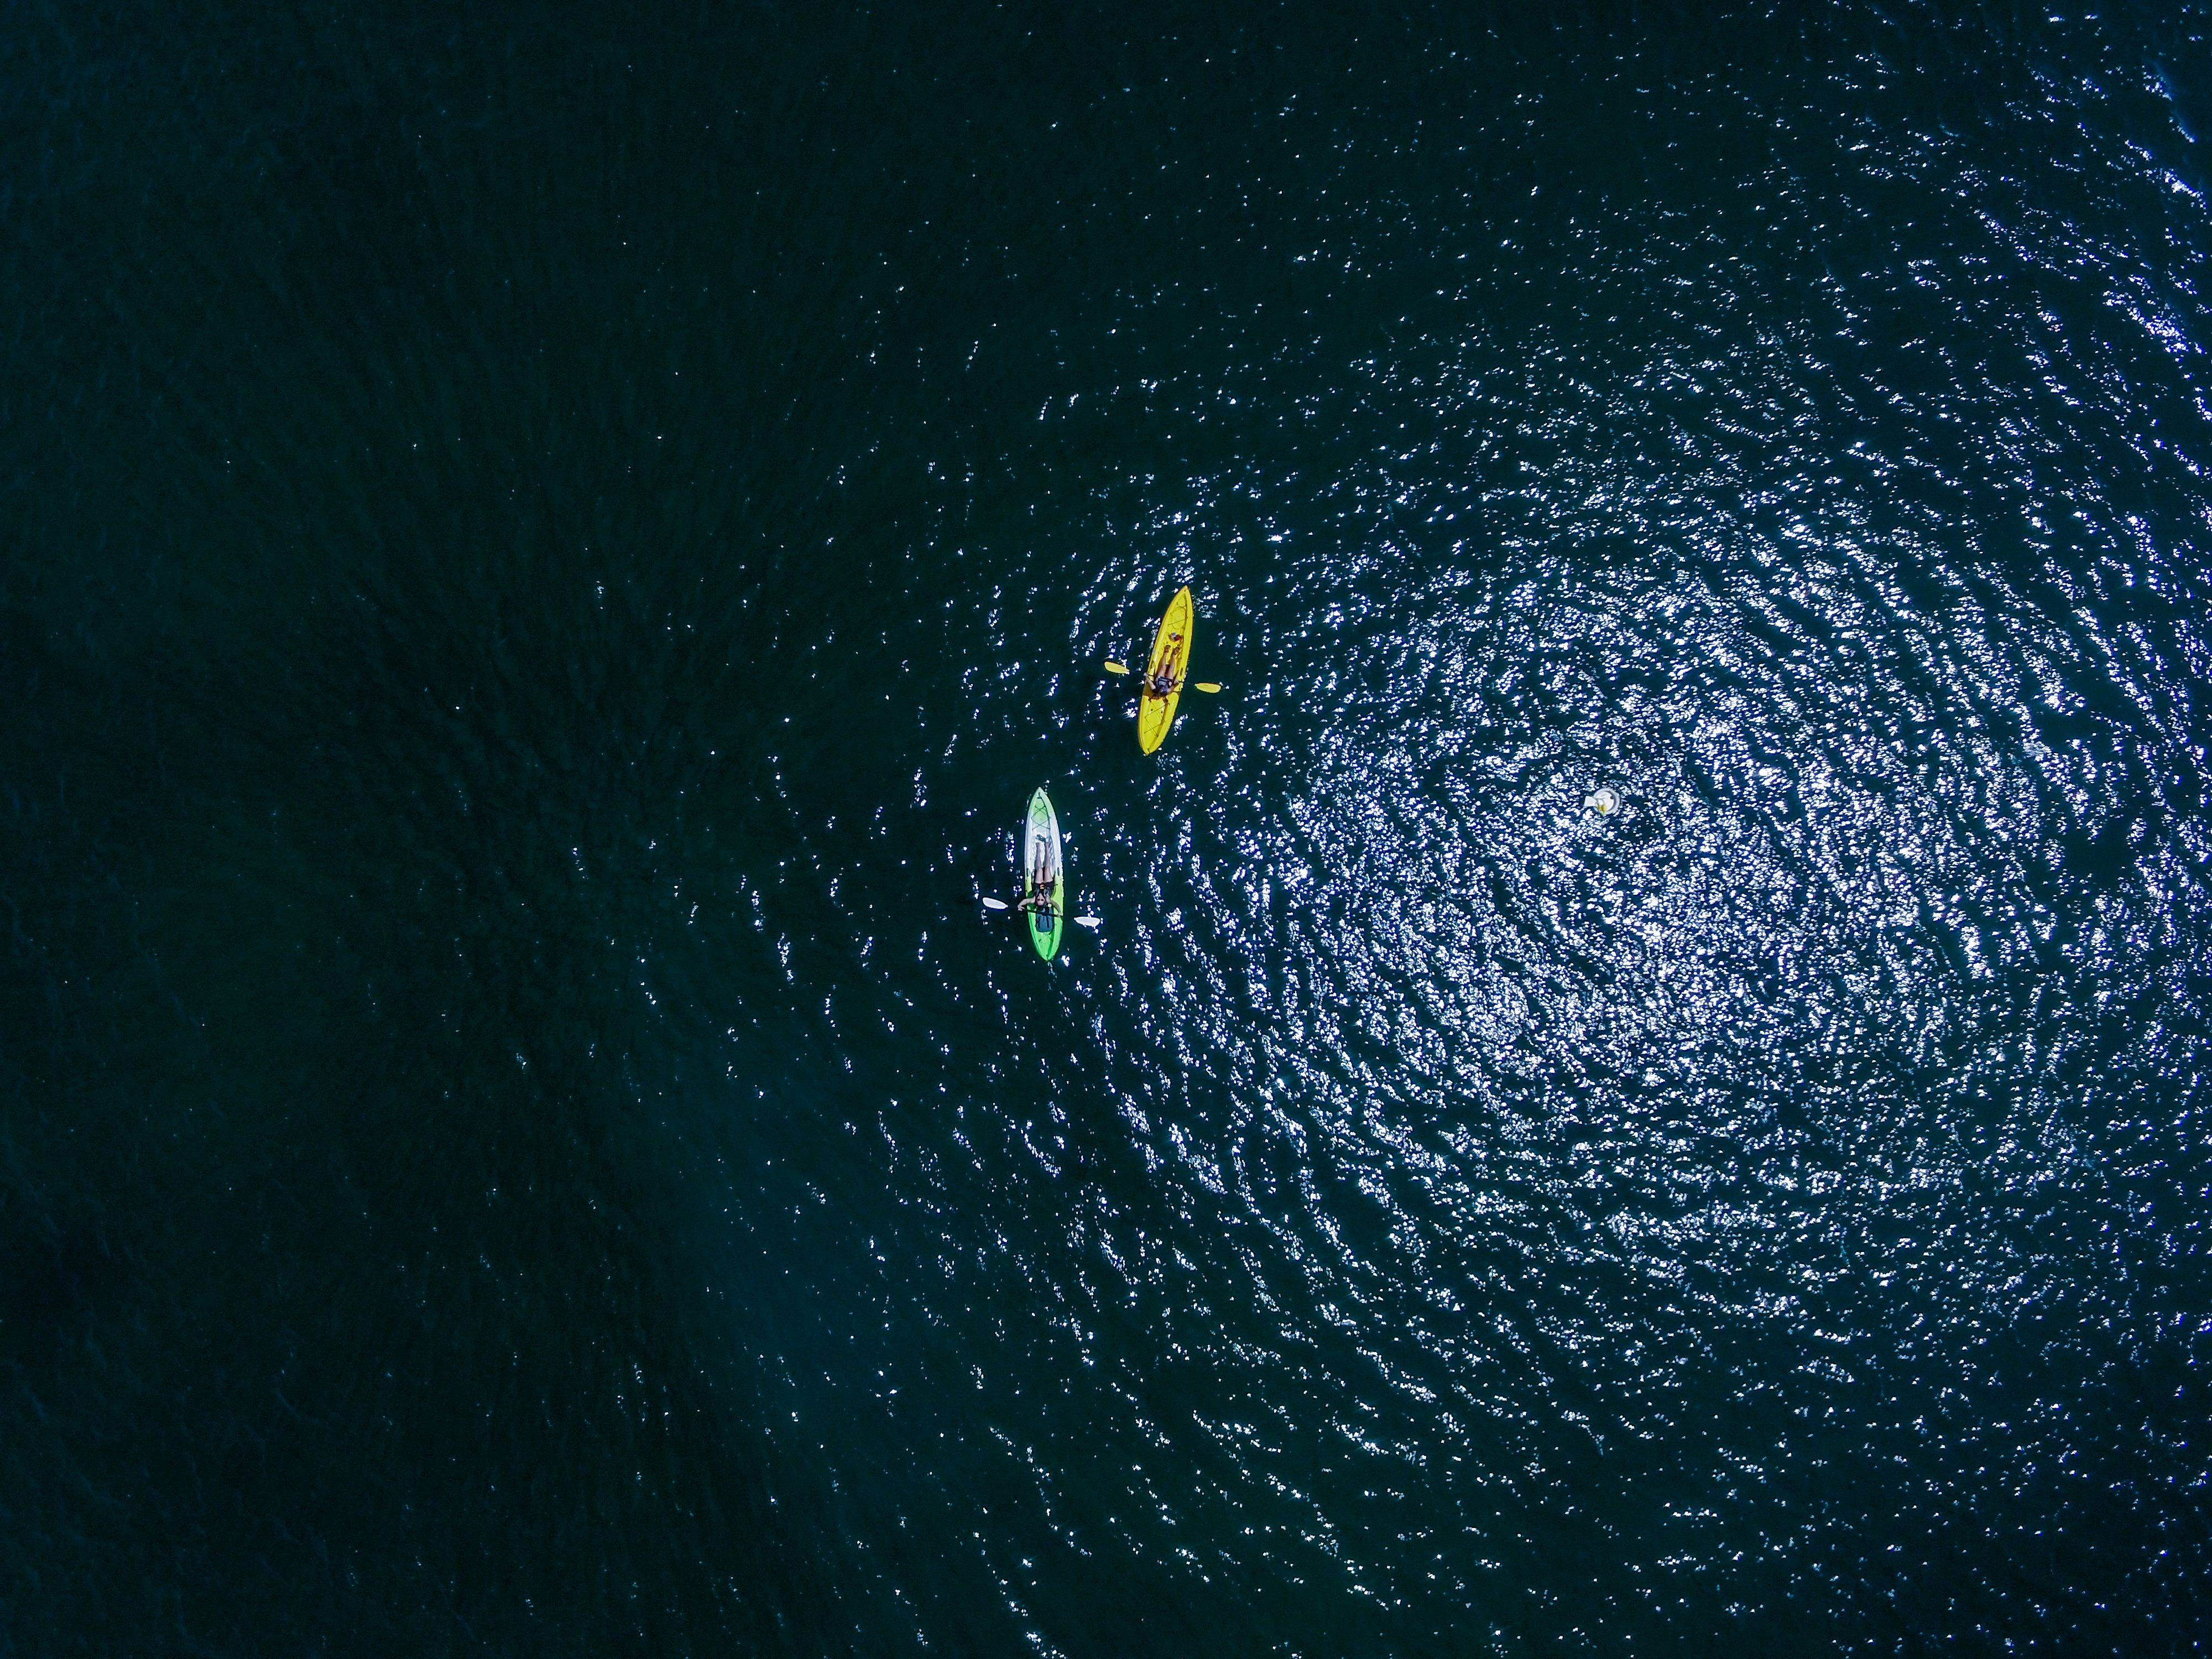 DJI Drone Shots kayaking 